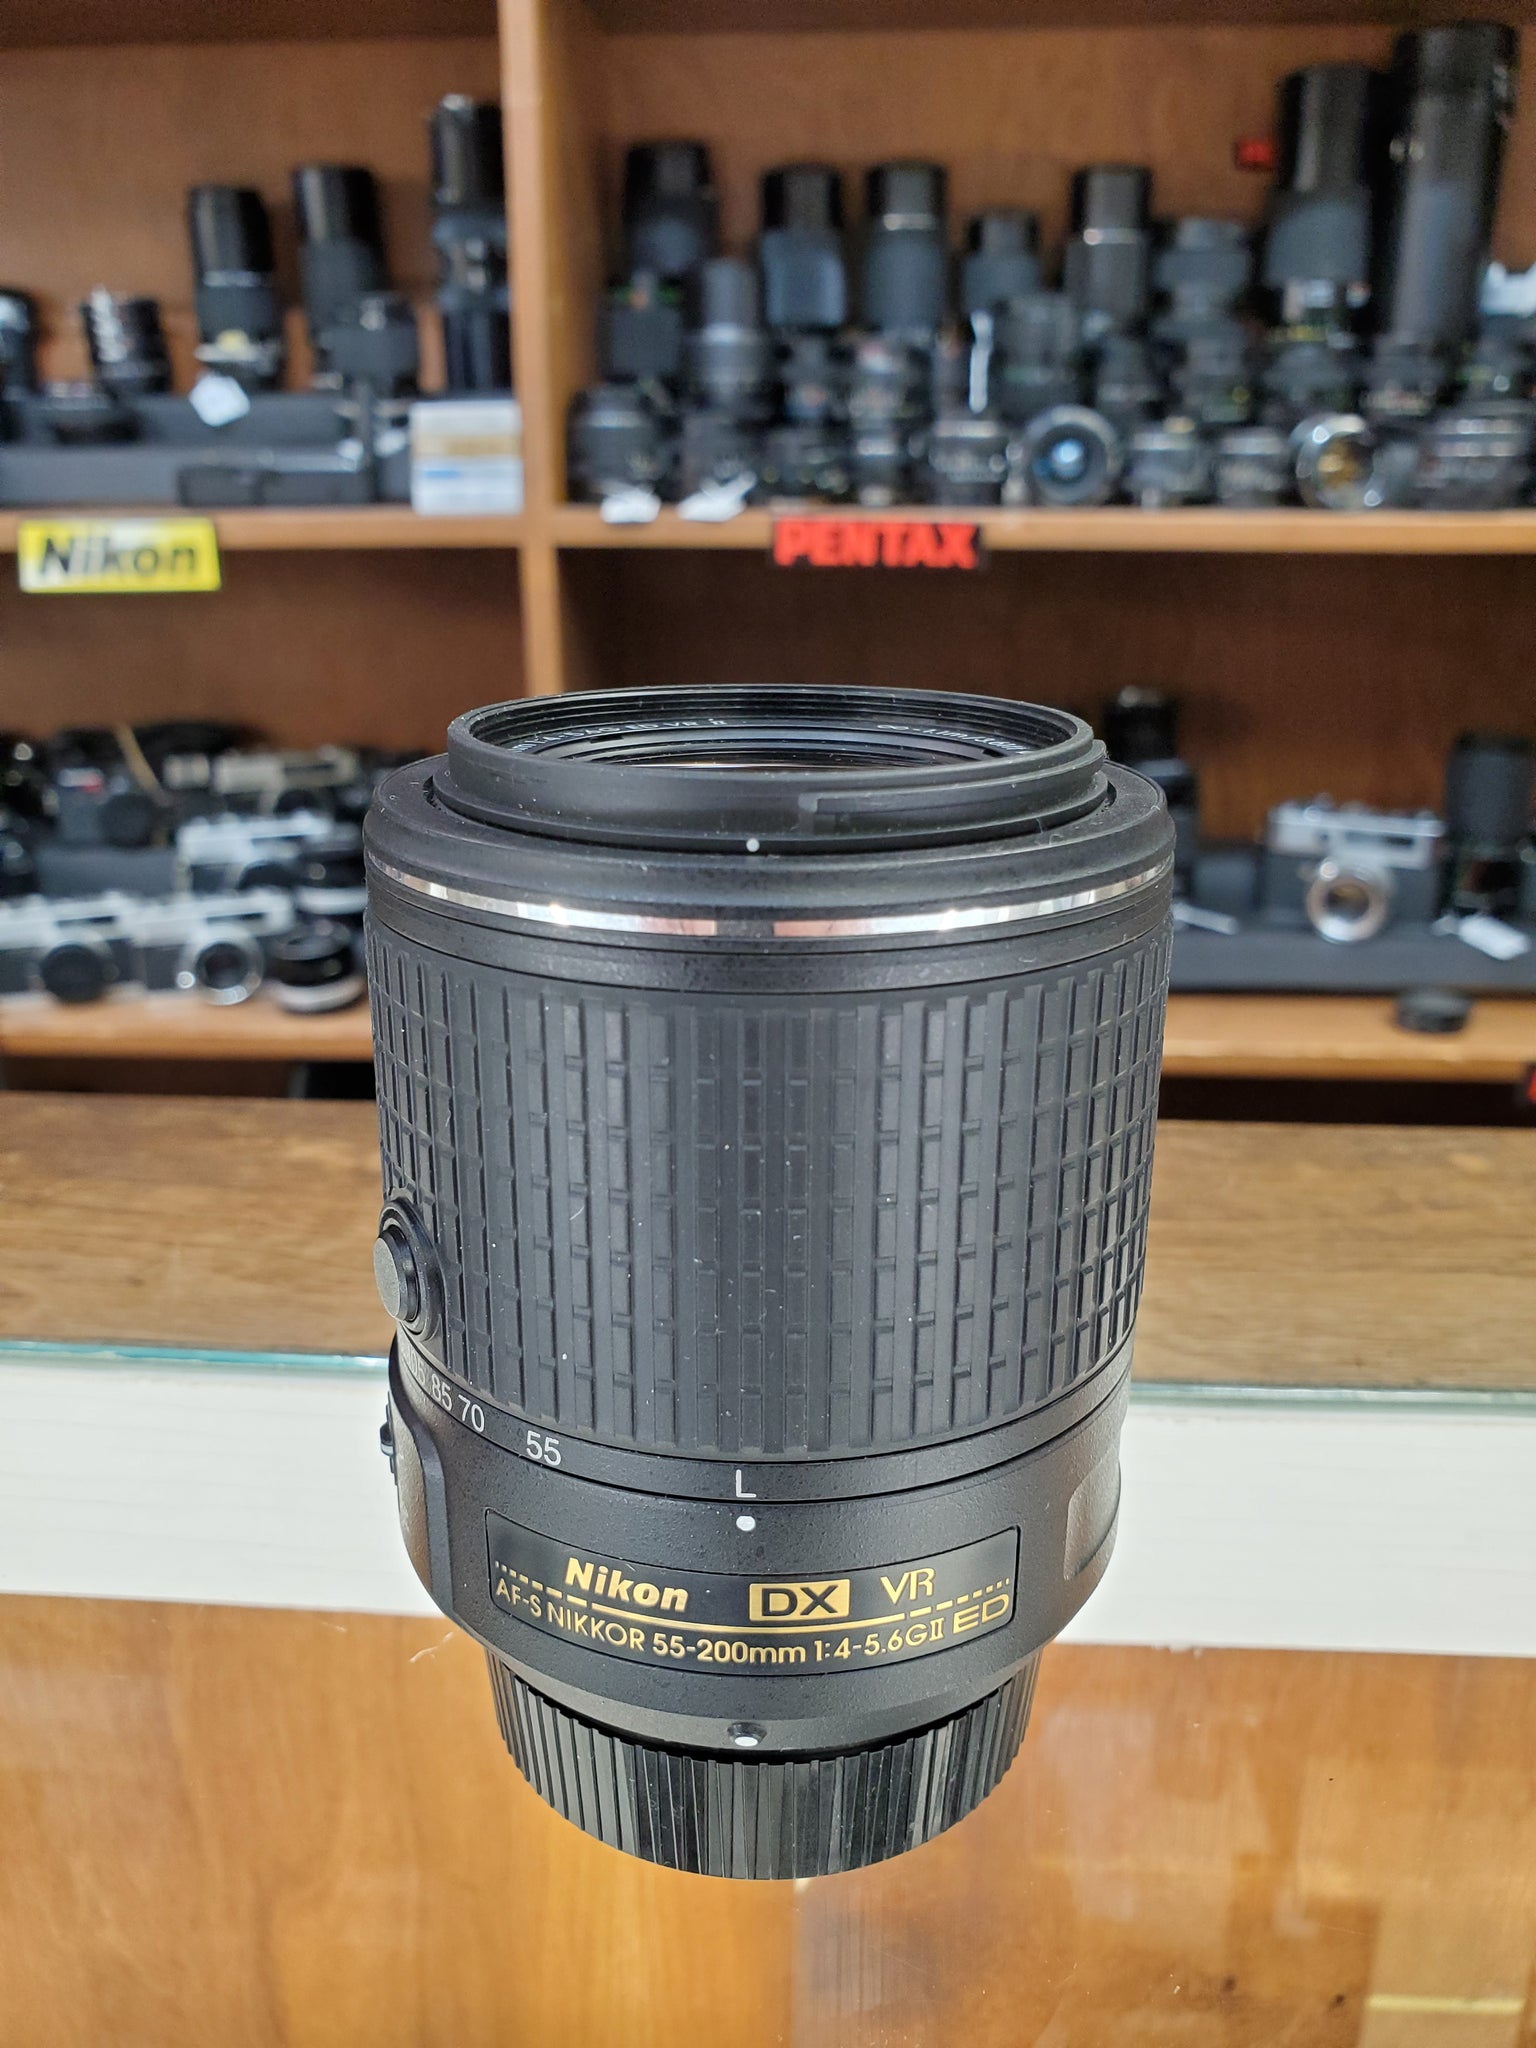 AF-S DX NIKKOR 55-200mm f/4-5.6G ED VR Lens - Used Condition 9.5